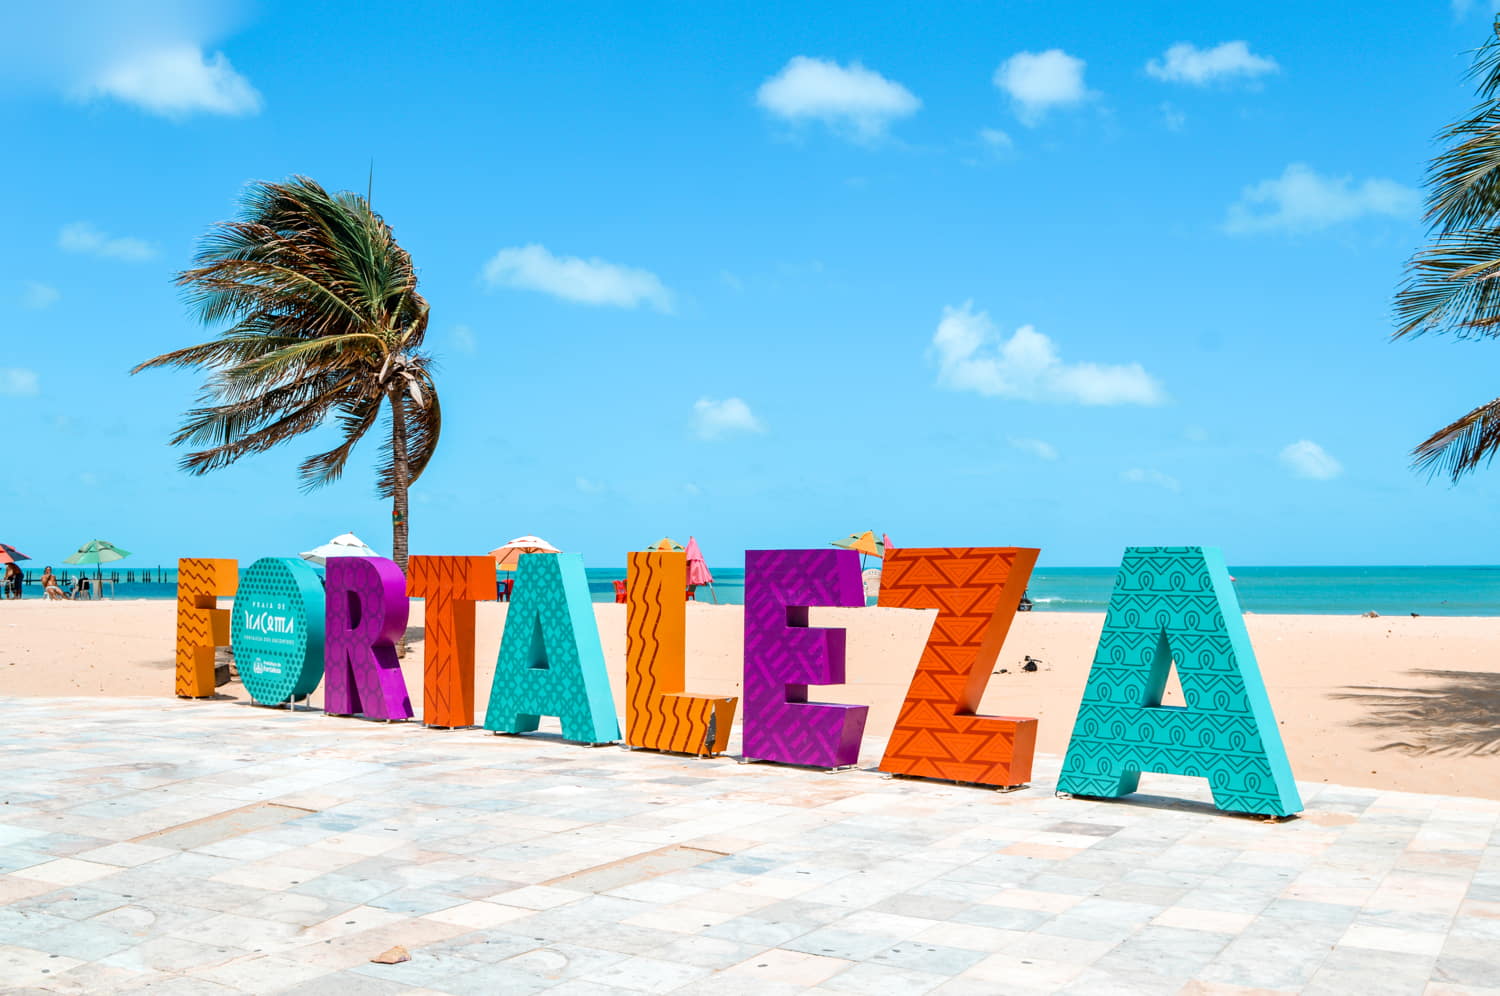 Pontos Turísticos de Fortaleza: Turismo de Qualidade